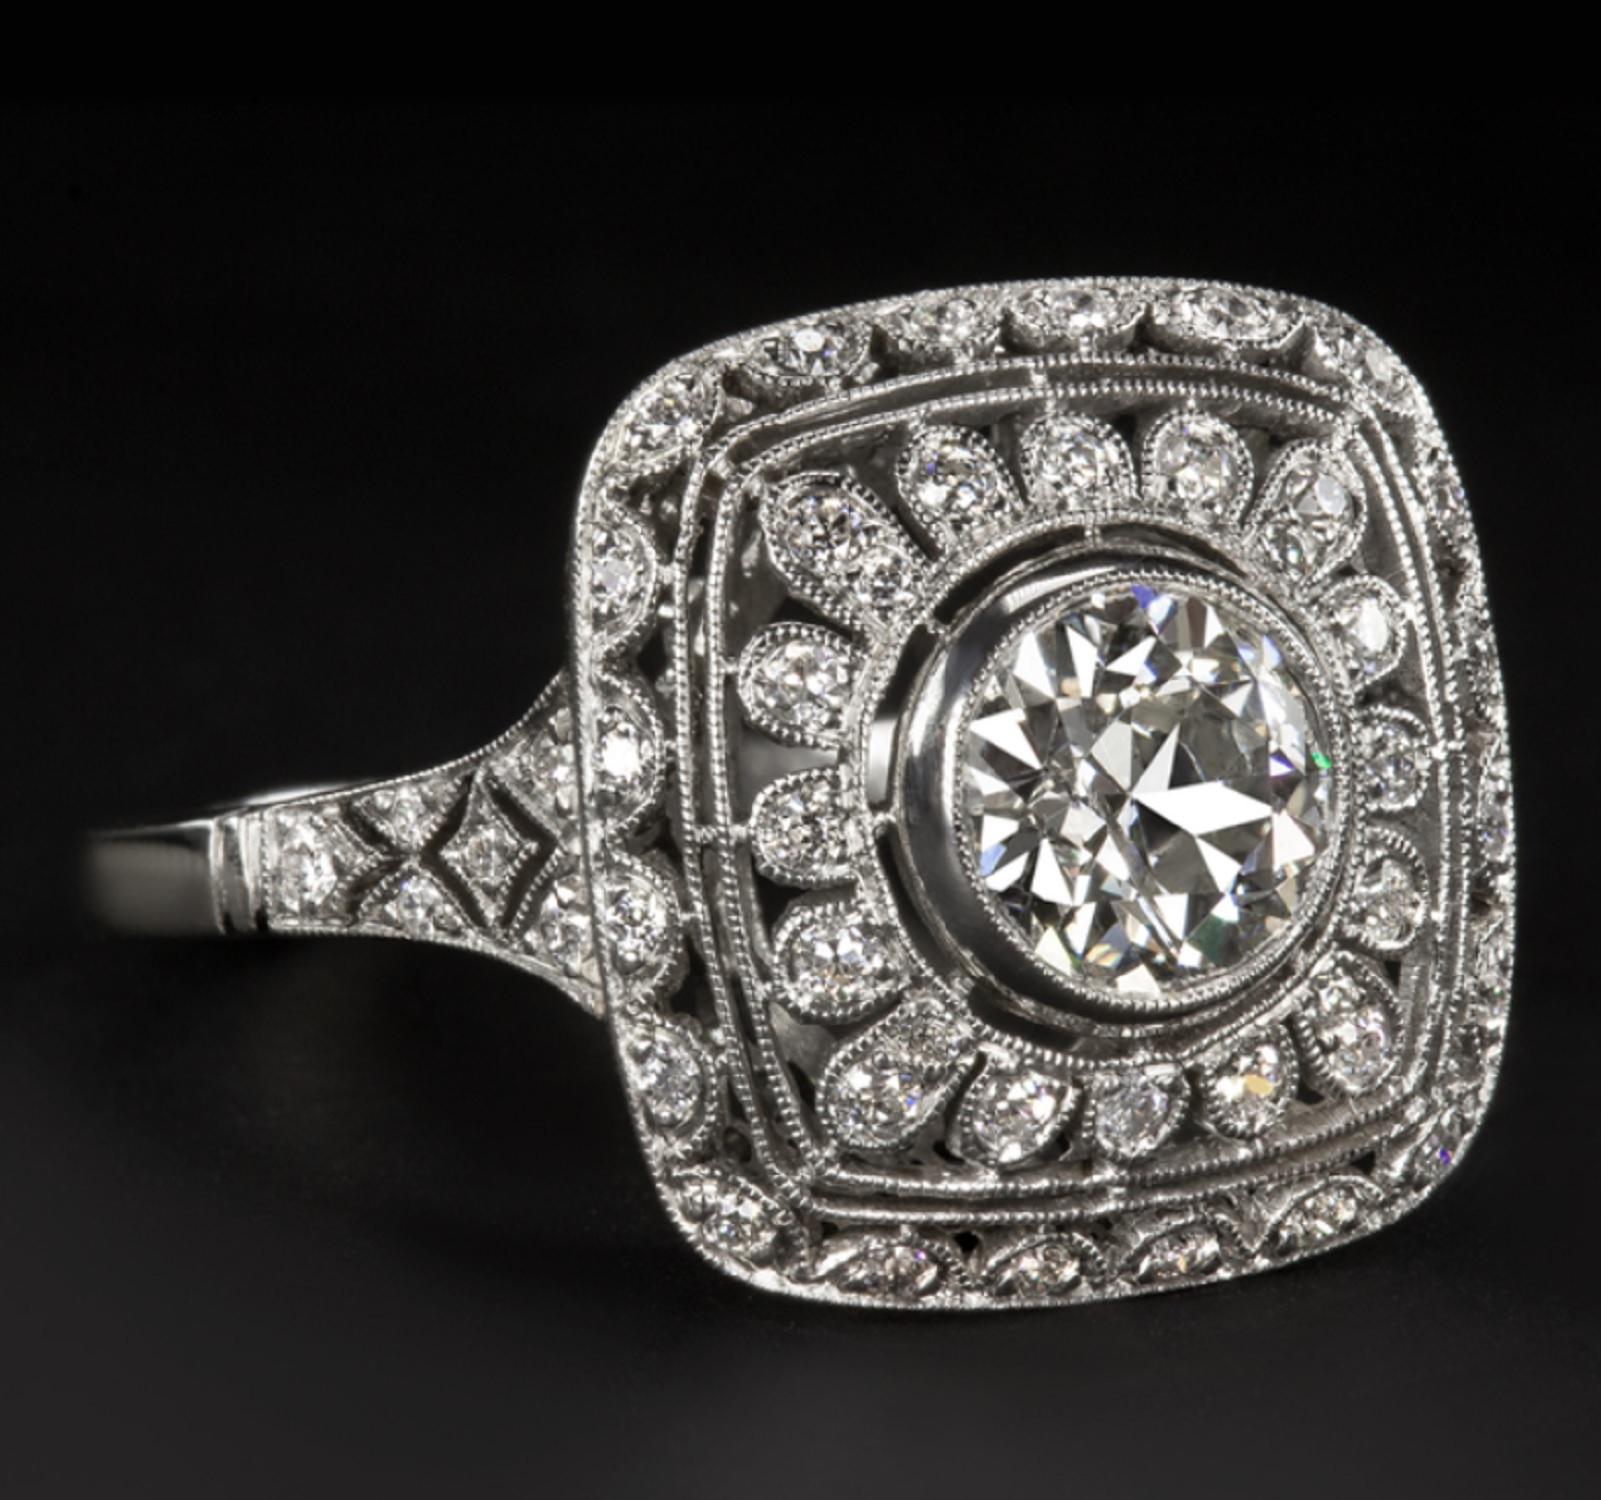 Cette bague exquise est ornée d'un diamant de taille européenne ancienne de 1 carat d'une brillance phénoménale, complété par une monture en platine richement détaillée et incrustée de diamants. Le diamant central a été taillé à la main dans les